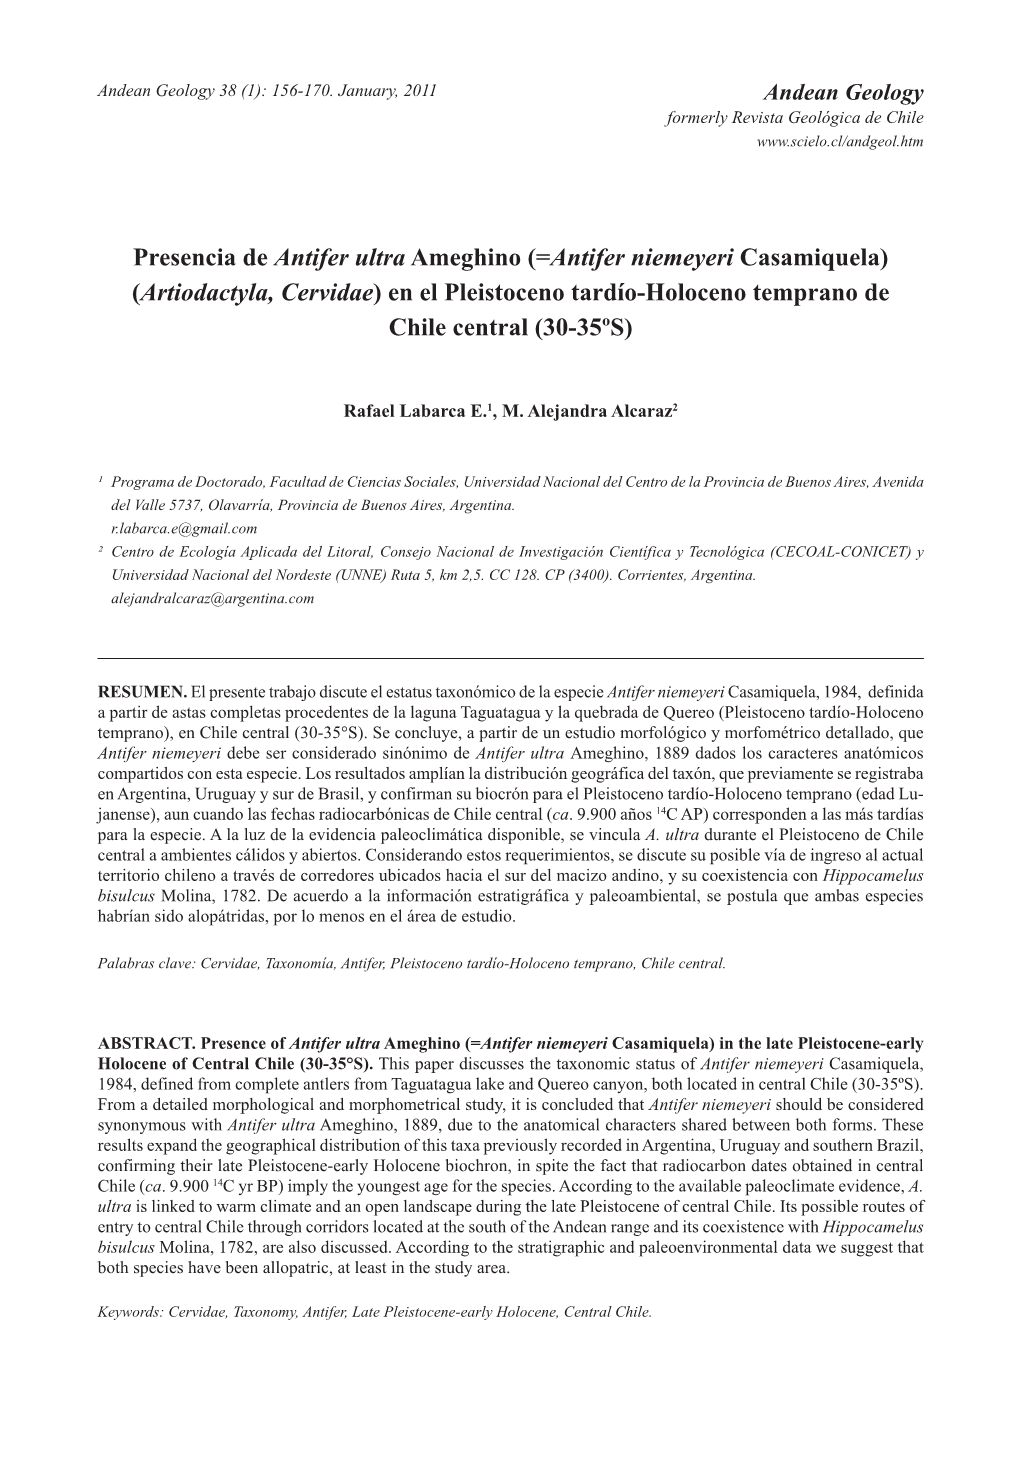 Presencia De Antifer Ultra Ameghino (=Antifer Niemeyeri Casamiquela) (Artiodactyla, Cervidae) En El Pleistoceno Tardío-Holoceno Temprano De Chile Central (30-35ºS)